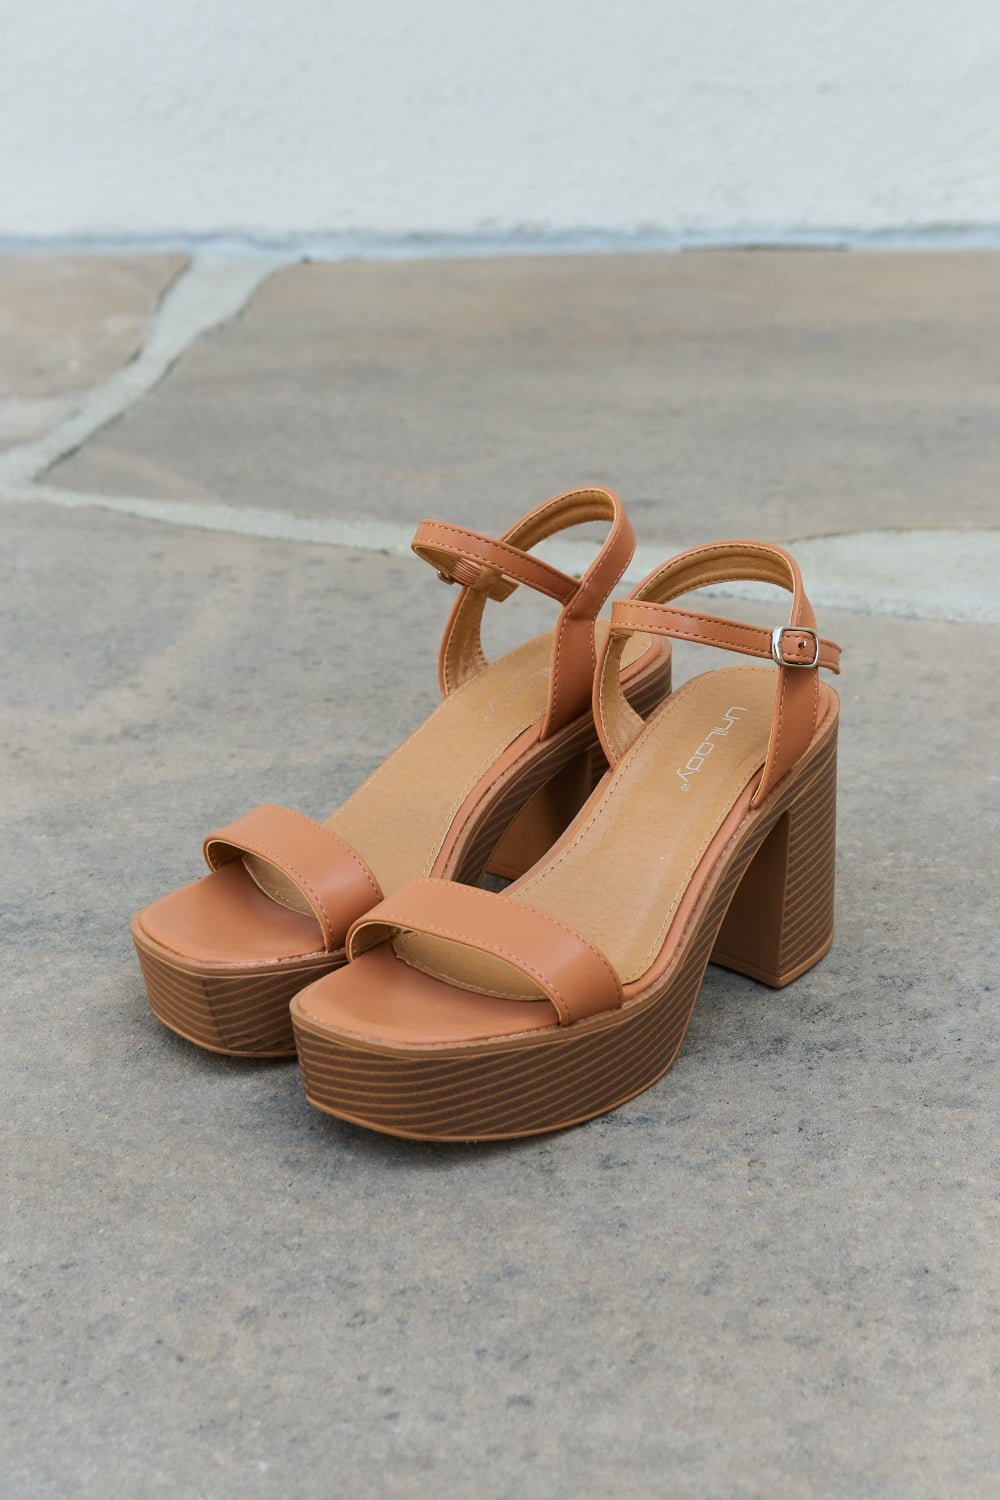 Vegan Leather Platform Heel Sandals in CognacSandalsWeeboo